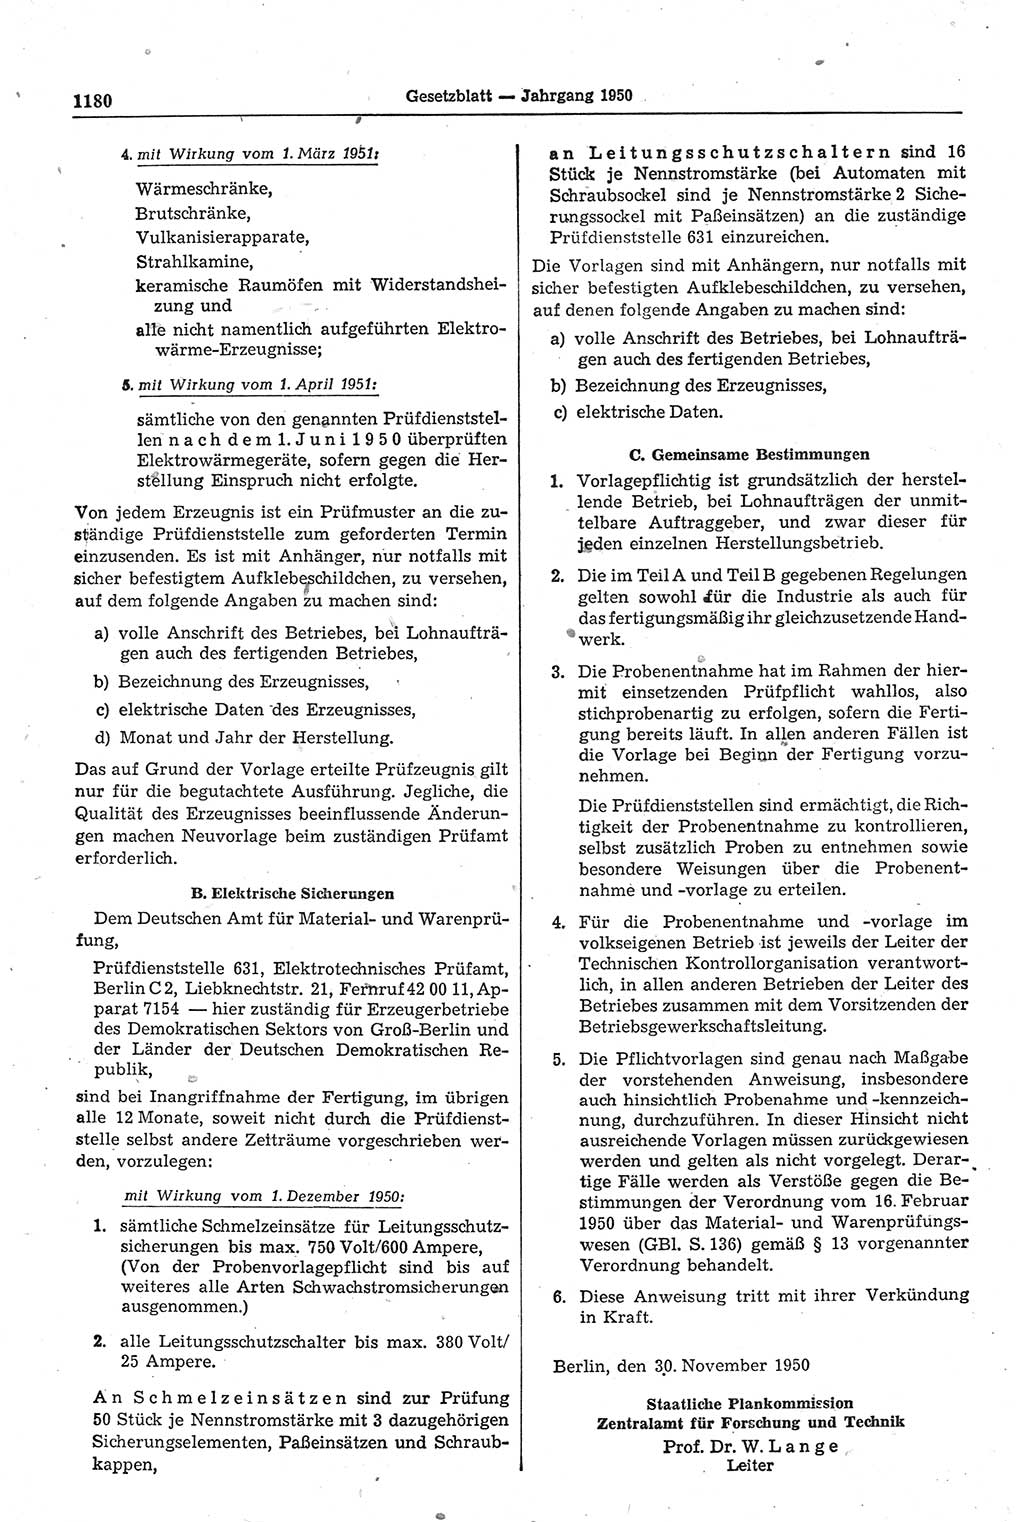 Gesetzblatt (GBl.) der Deutschen Demokratischen Republik (DDR) 1950, Seite 1180 (GBl. DDR 1950, S. 1180)